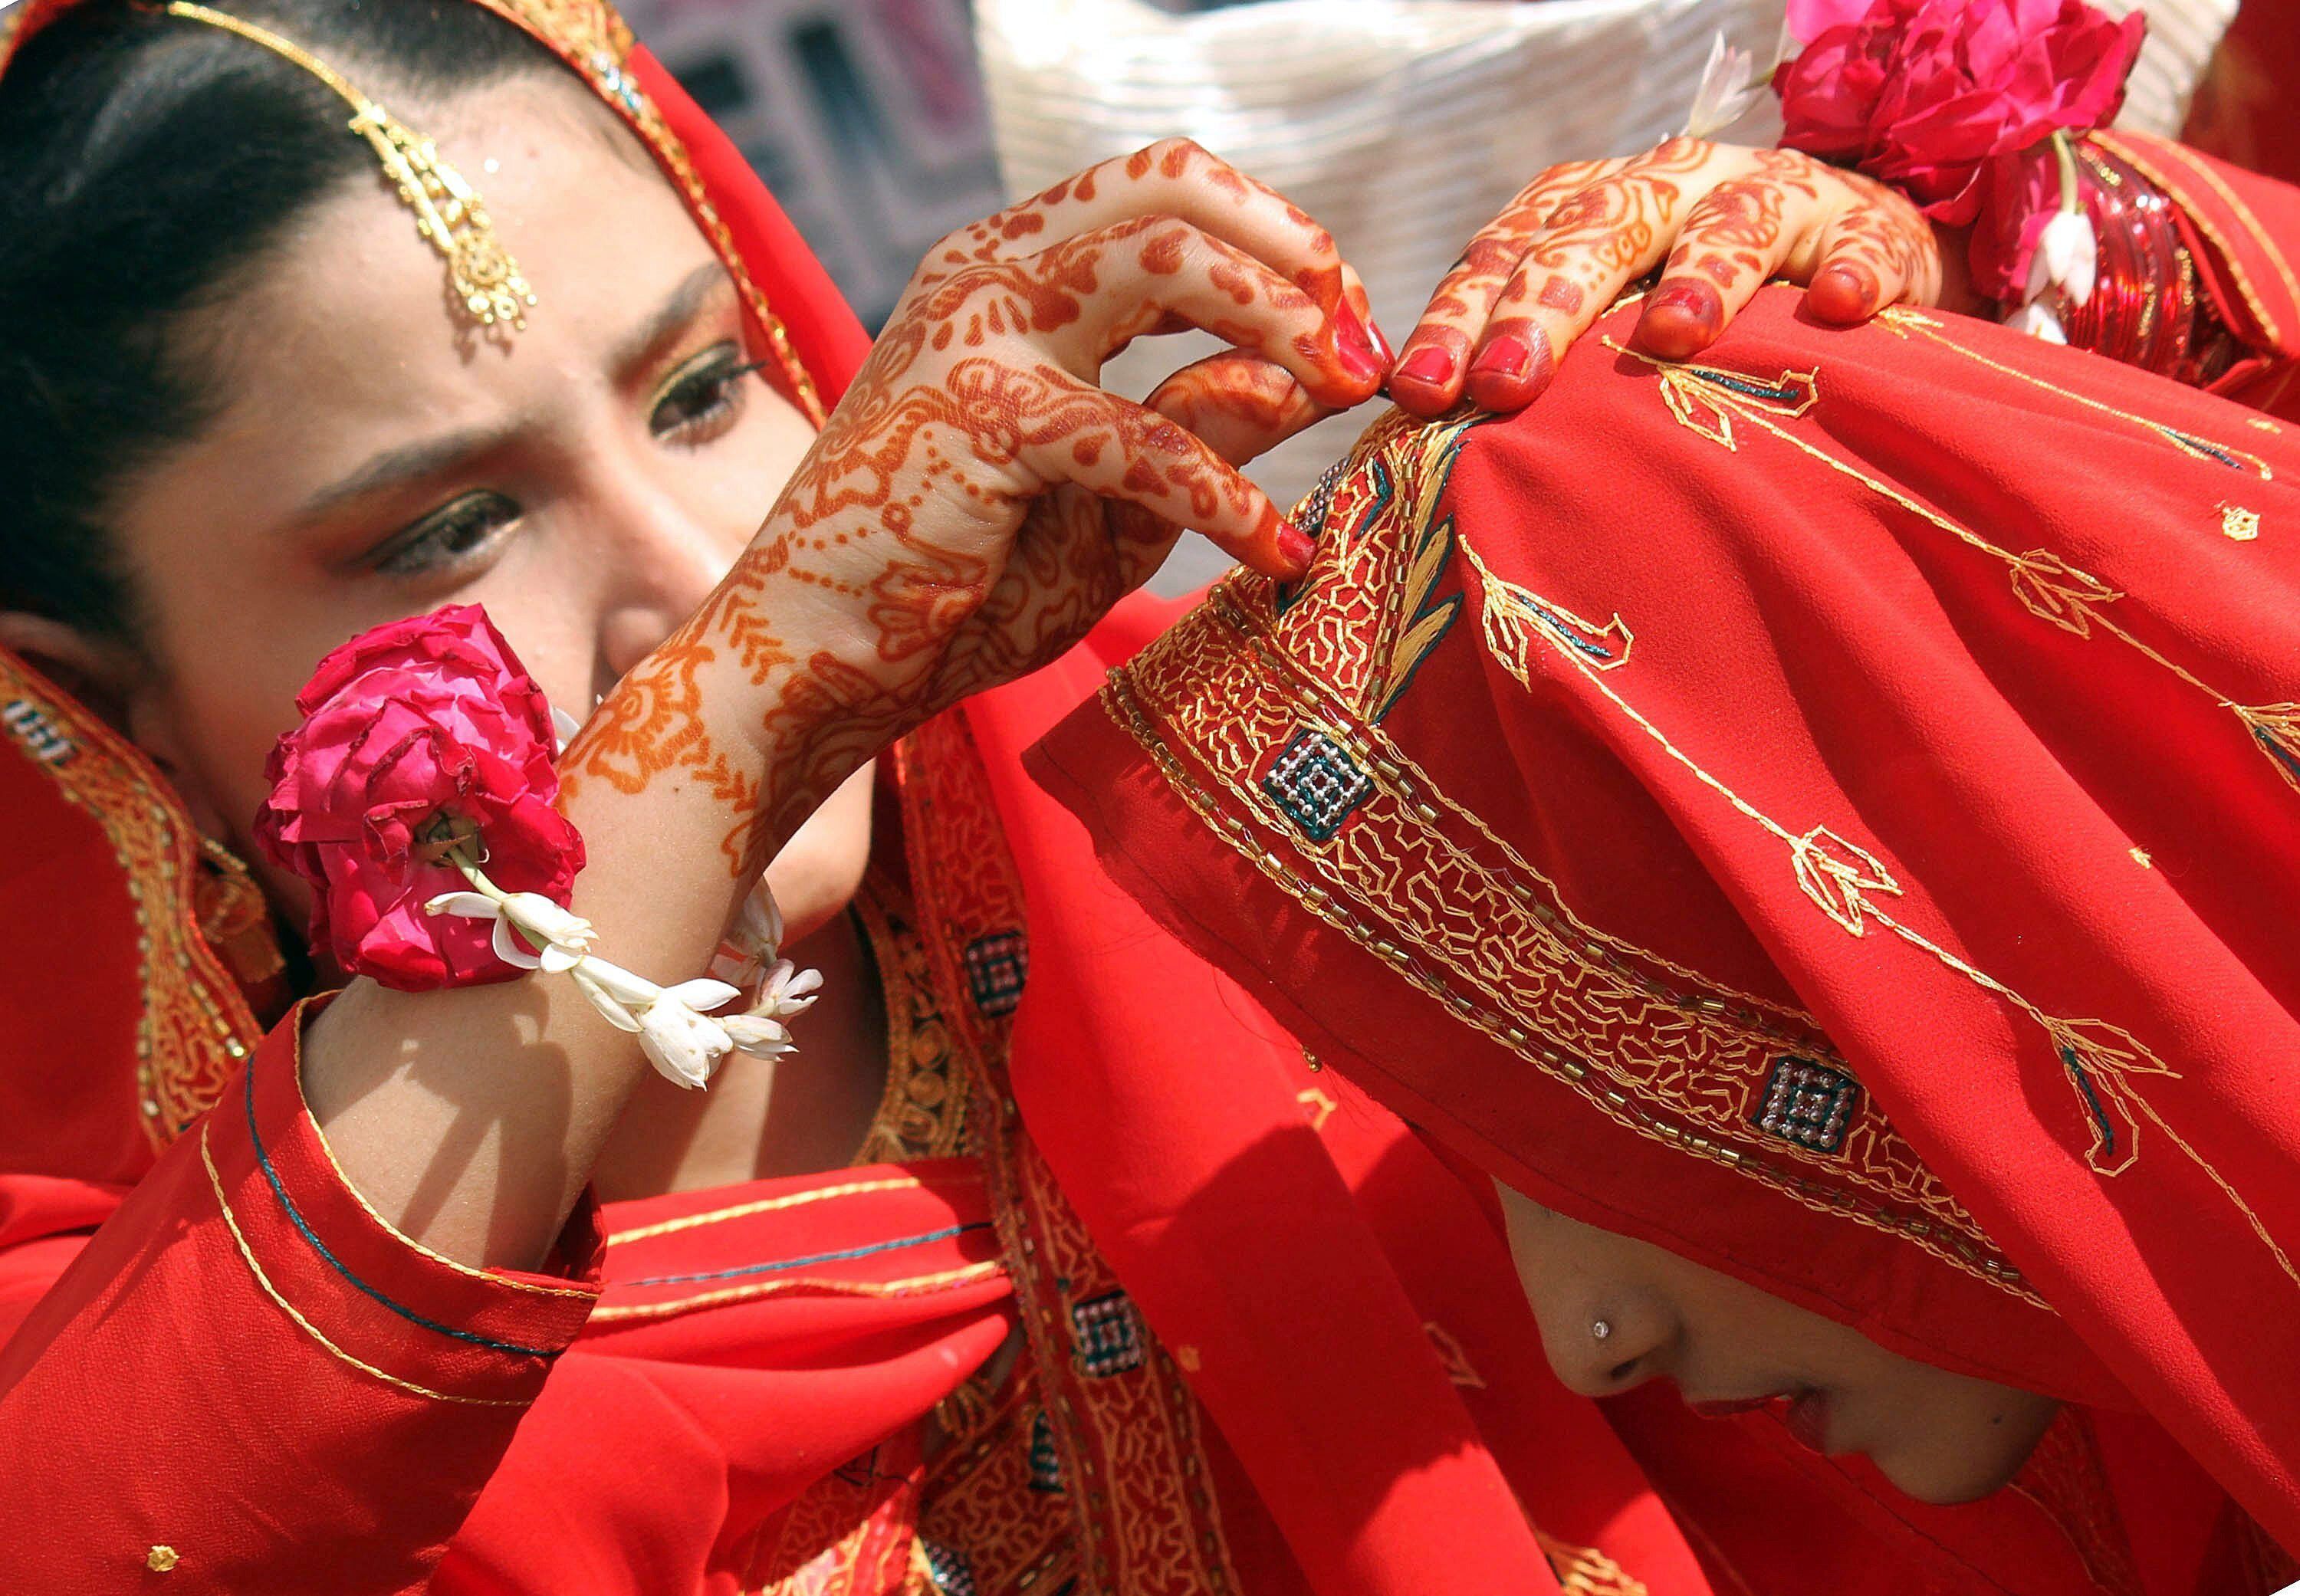 Dos novias se ayudan a colocar el pañuelo durante su ceremonia matrimonial múltiple en Karachi (Pakistán) en una imagen de archivo. EFE/Rehan 